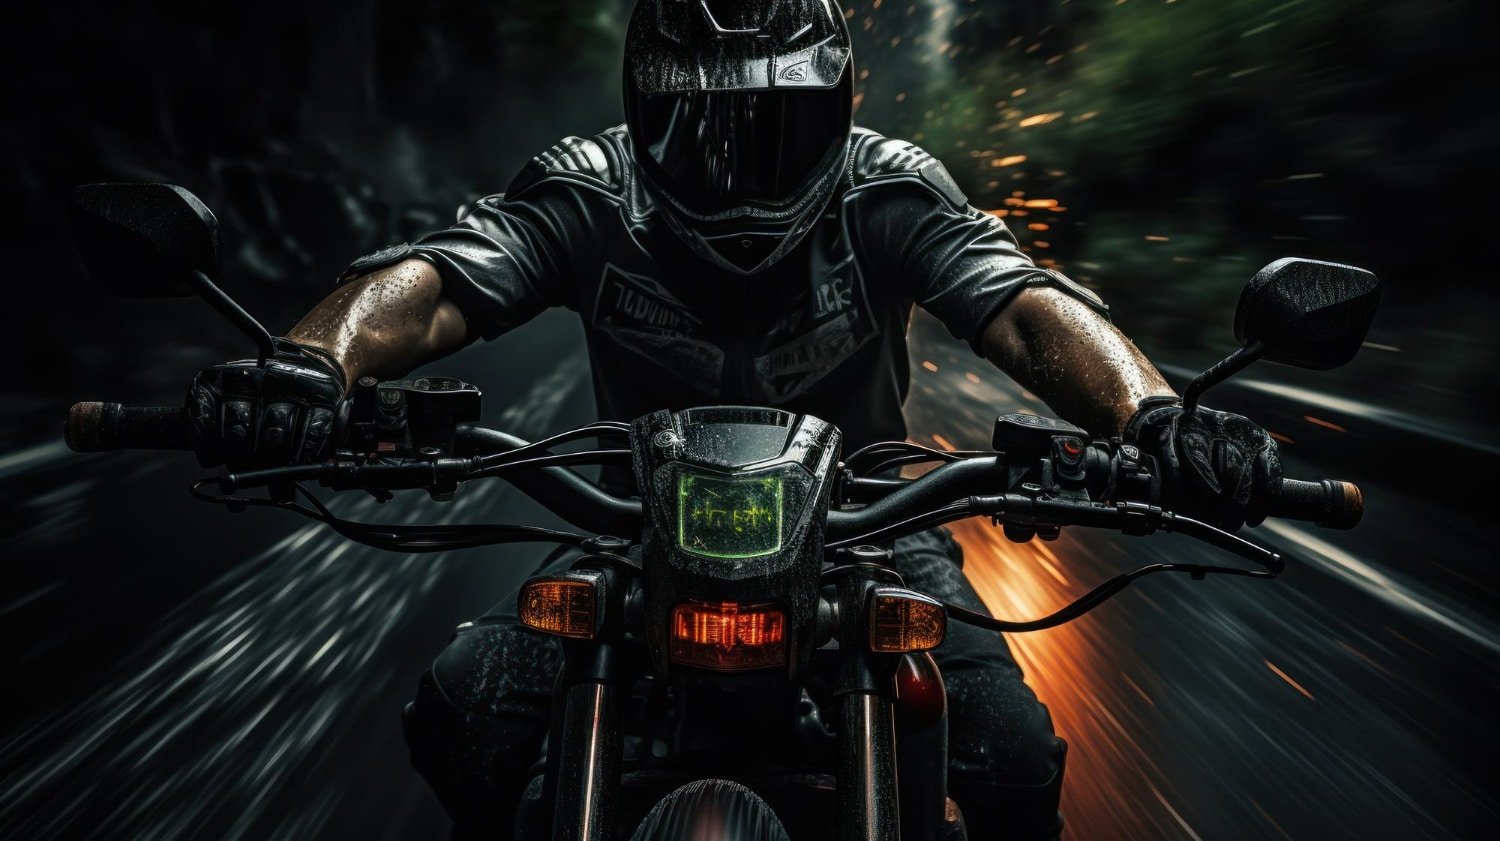 MotoSport.com For the Passionate Rider